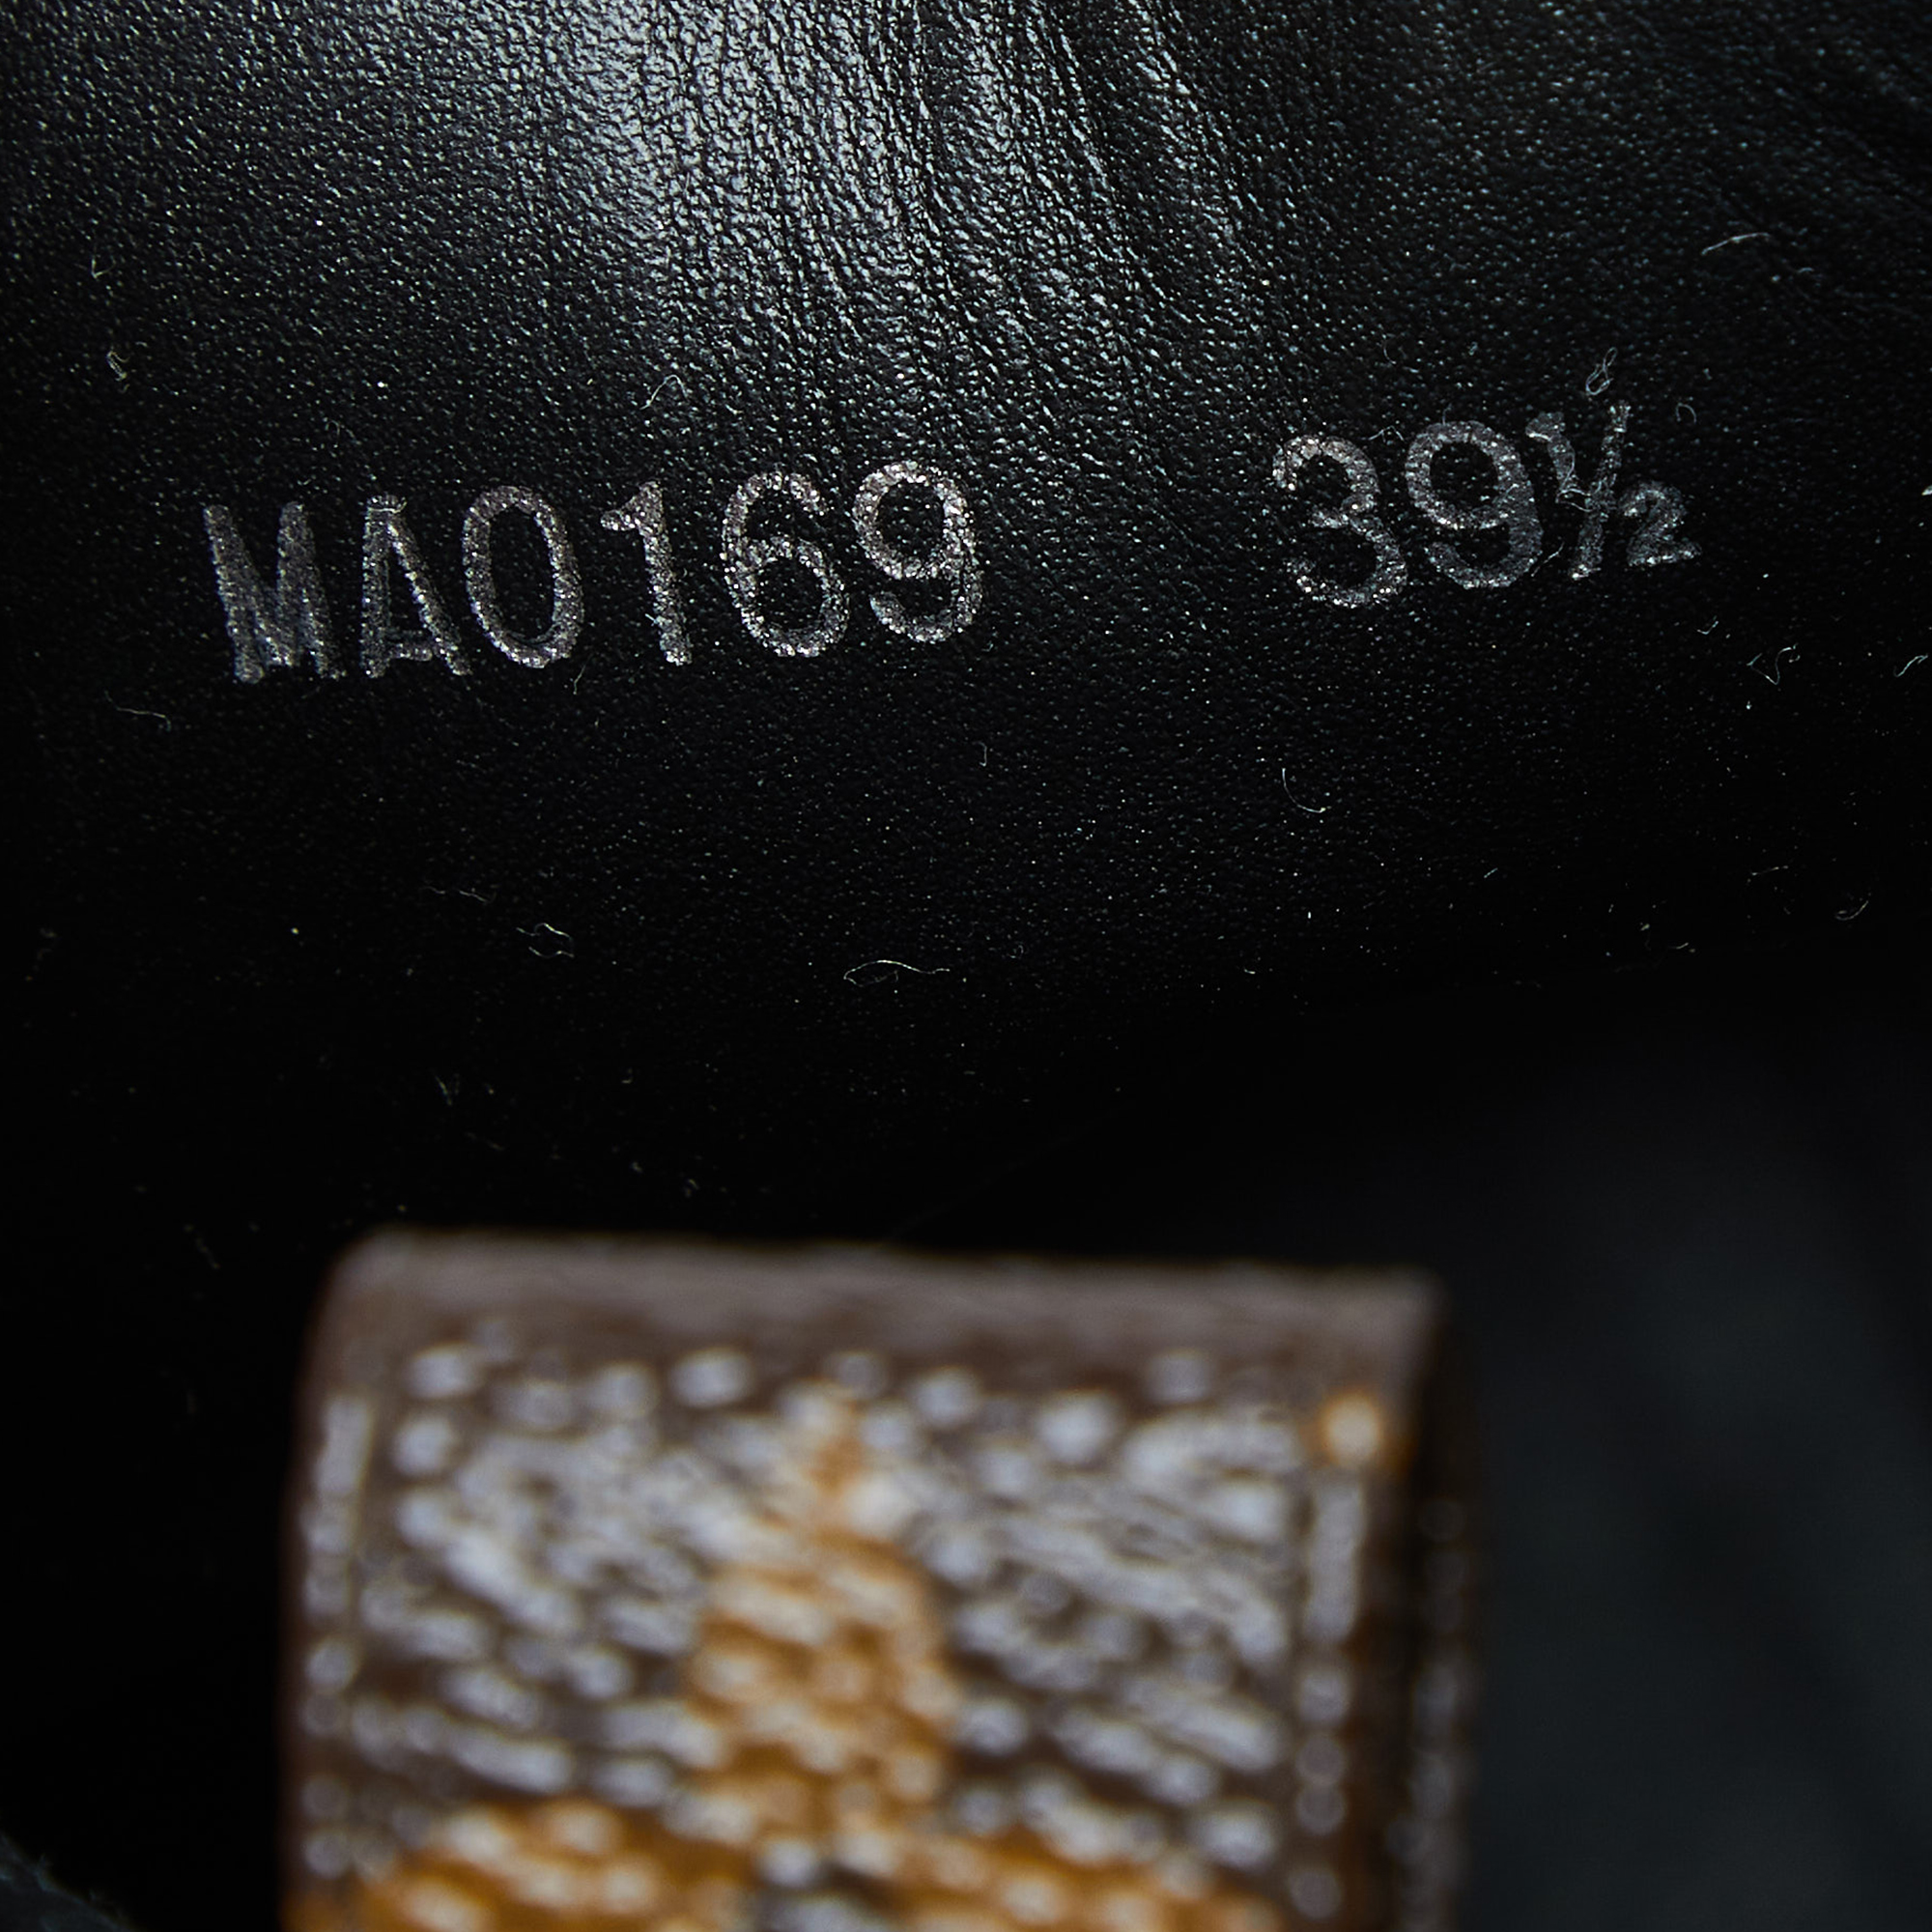 Louis Vuitton Black Suede And Monogram Canvas Laureate Desert Boots Size 39.5